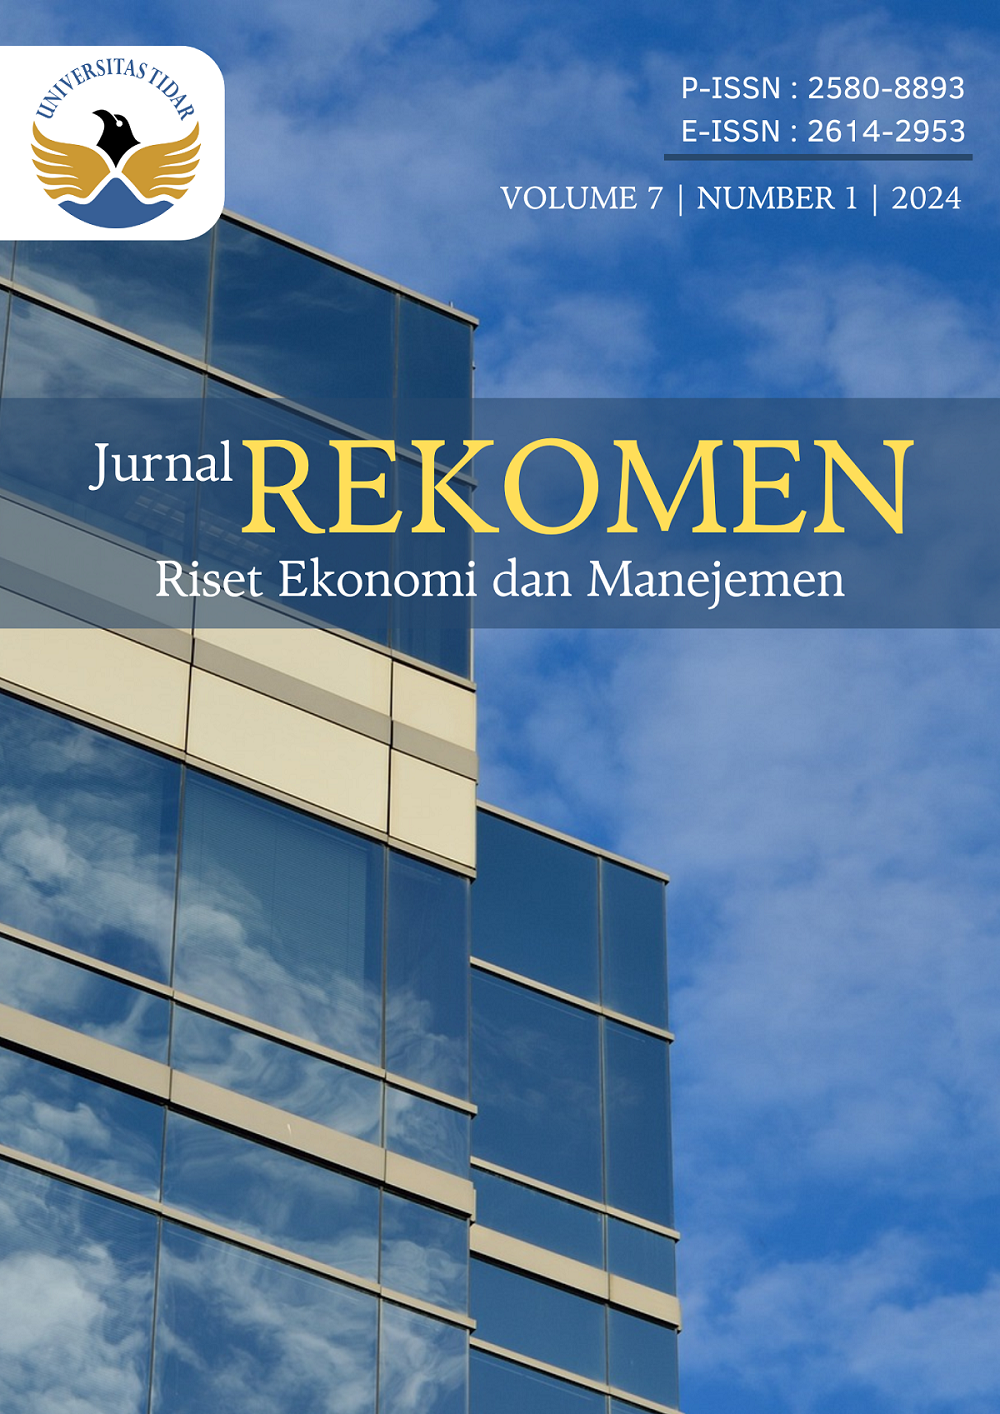 					View Vol. 7 No. 1 (2024): REKOMEN (Riset Ekonomi dan Manajemen)
				